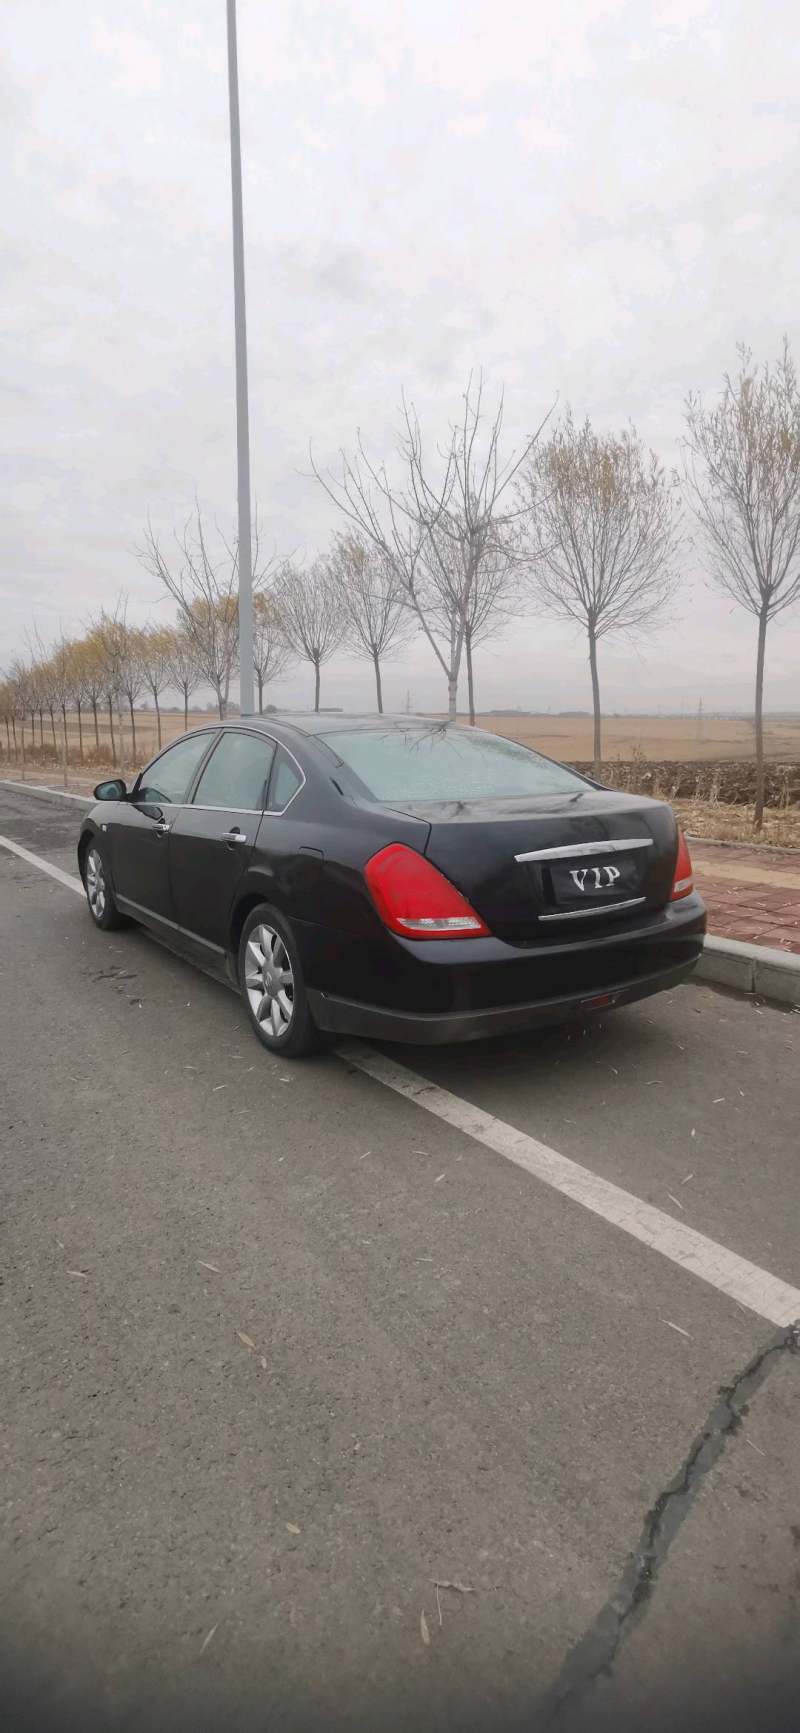 黑龙江省哈尔滨市抵押车交易市场